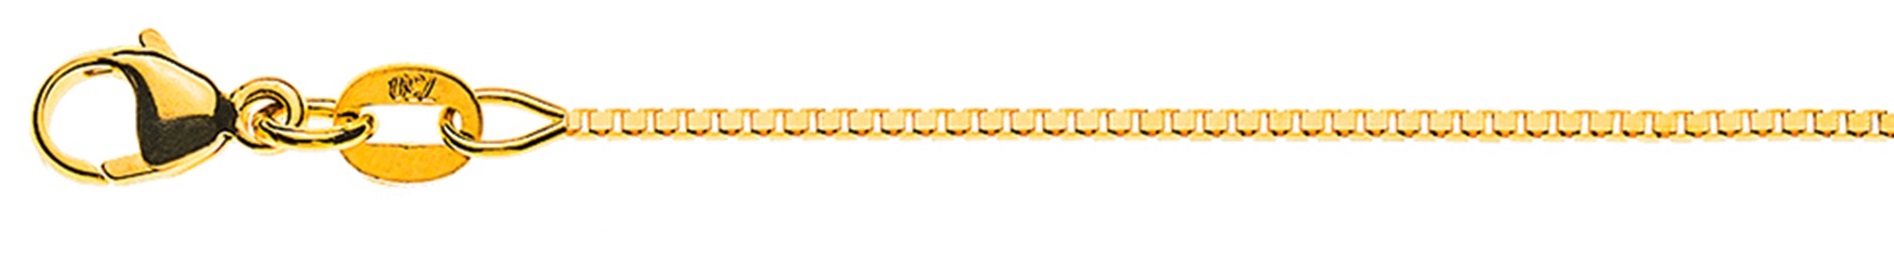 AURONOS Élégance Necklace yellow gold 14K Venetian chain diamond cut 55cm 0.9mm